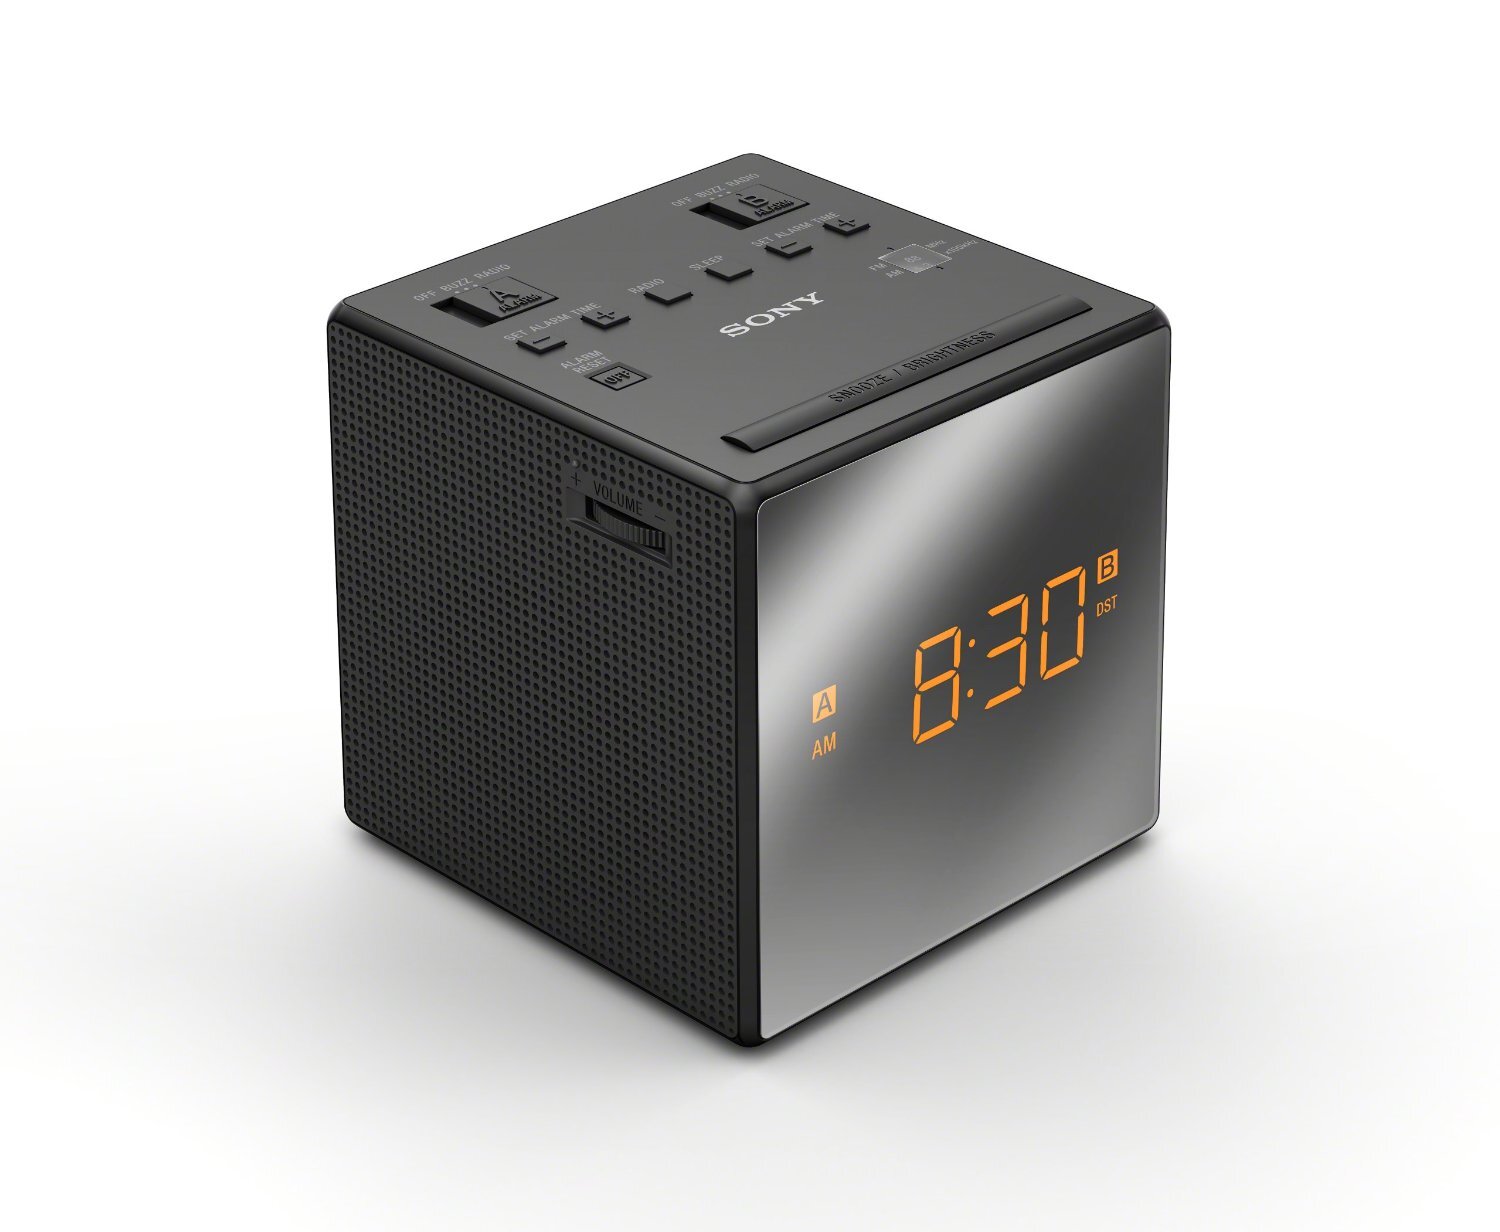 Clock Radio Sony: Nơi bán giá rẻ, uy tín, chất lượng nhất | Websosanh